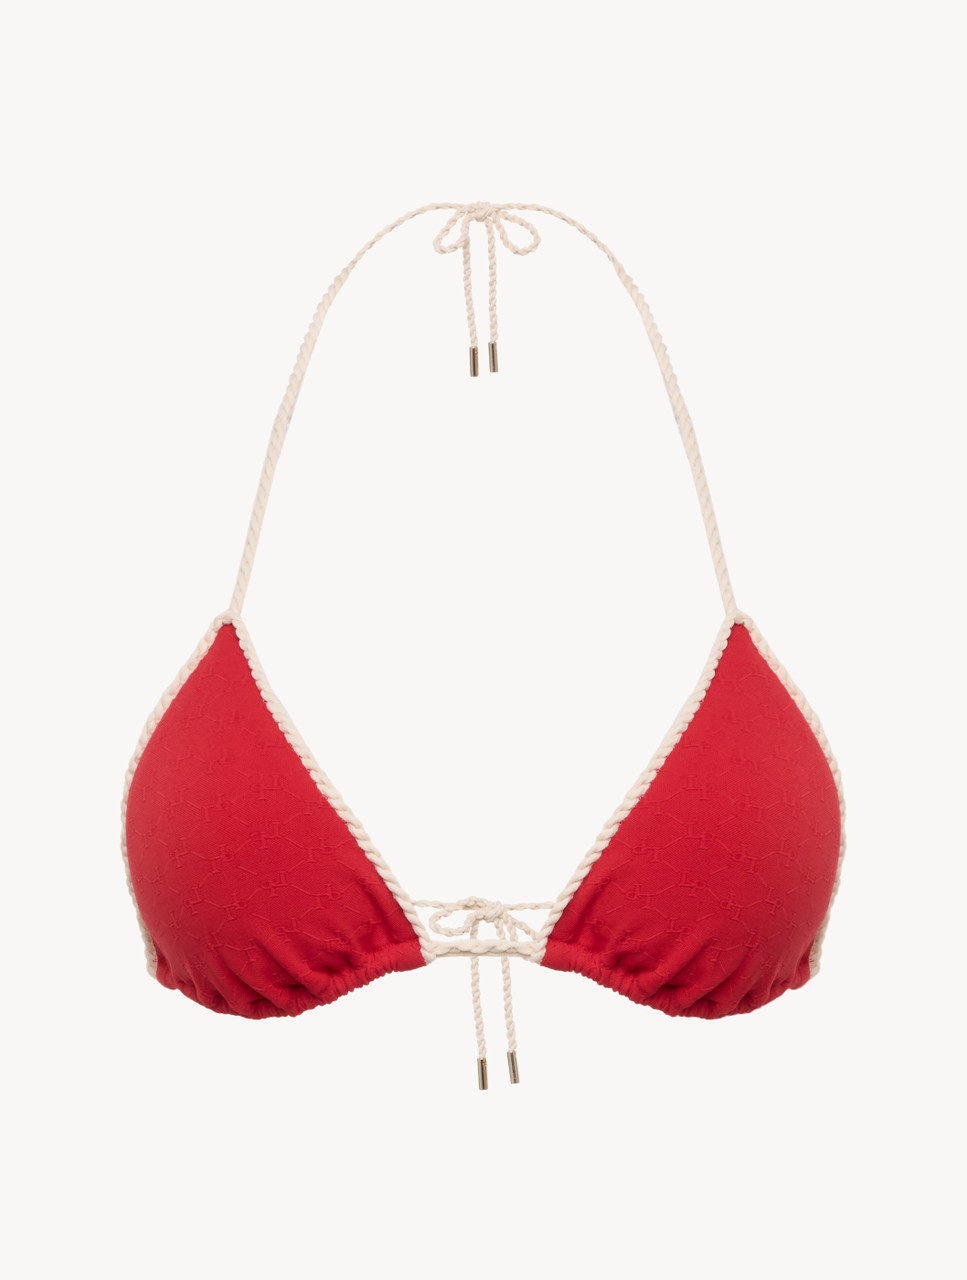 Monogram Triangle Bikini Top in red